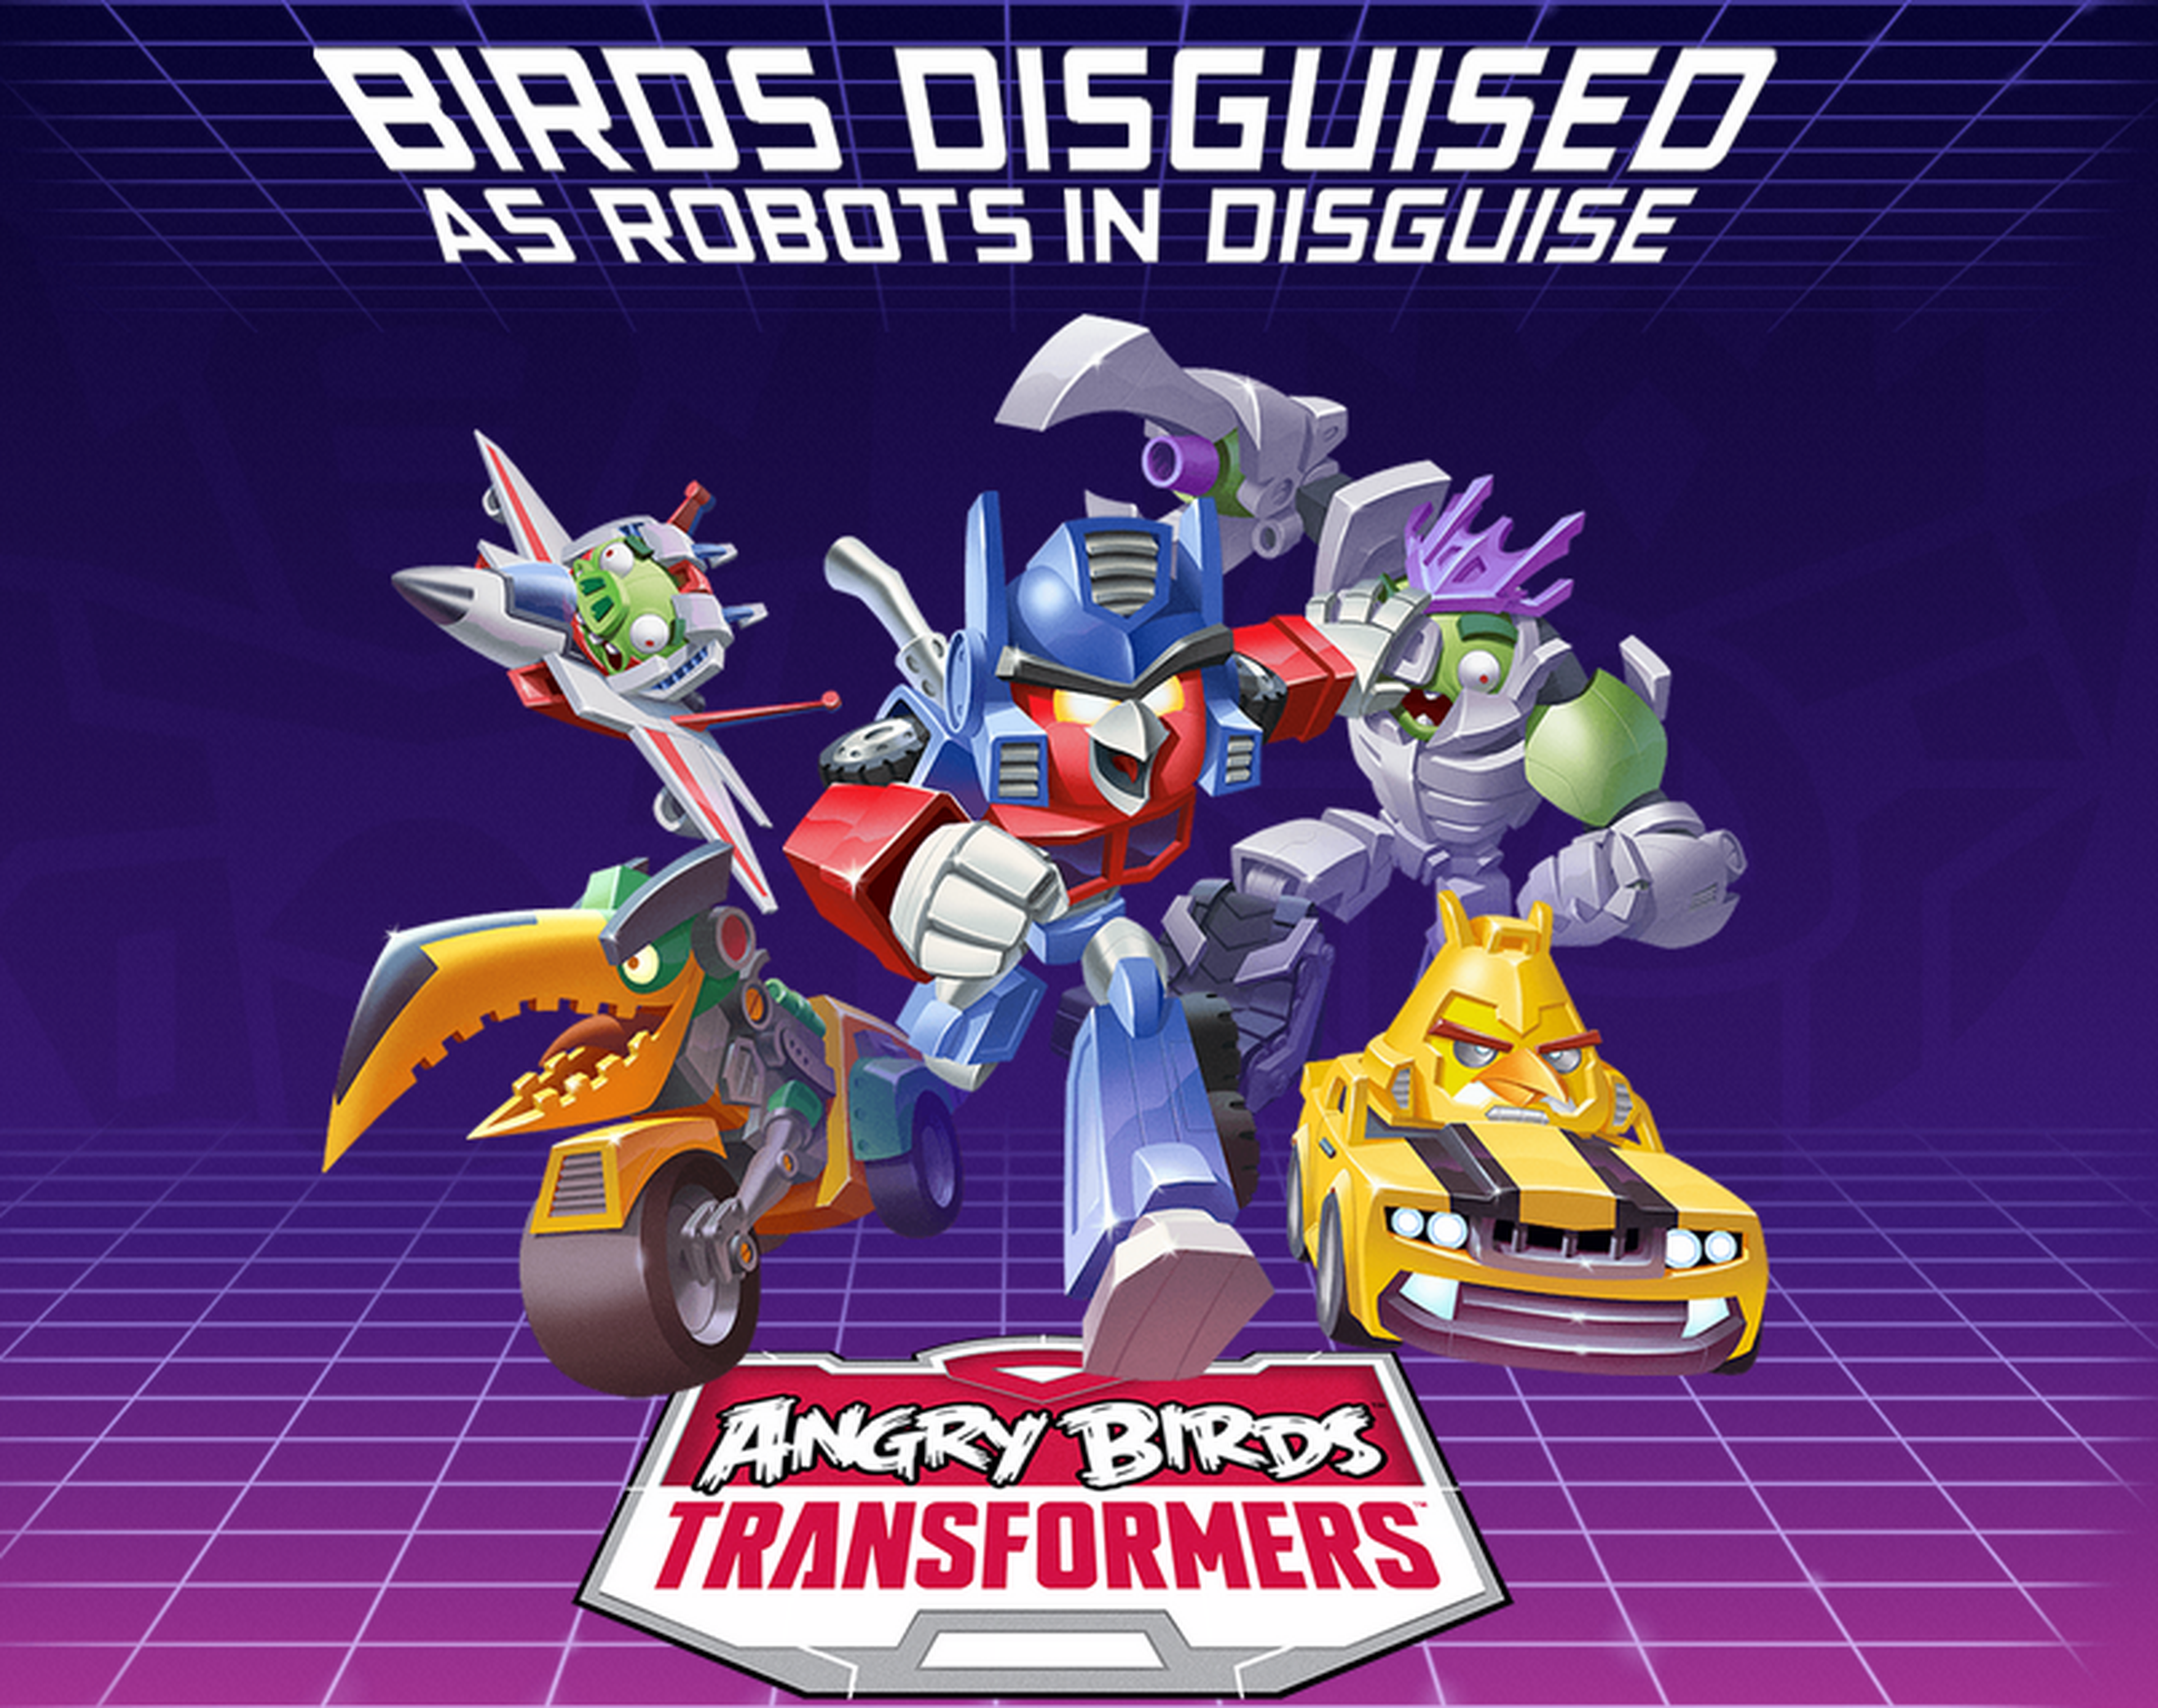 Anunciado Angry Birds Transformers